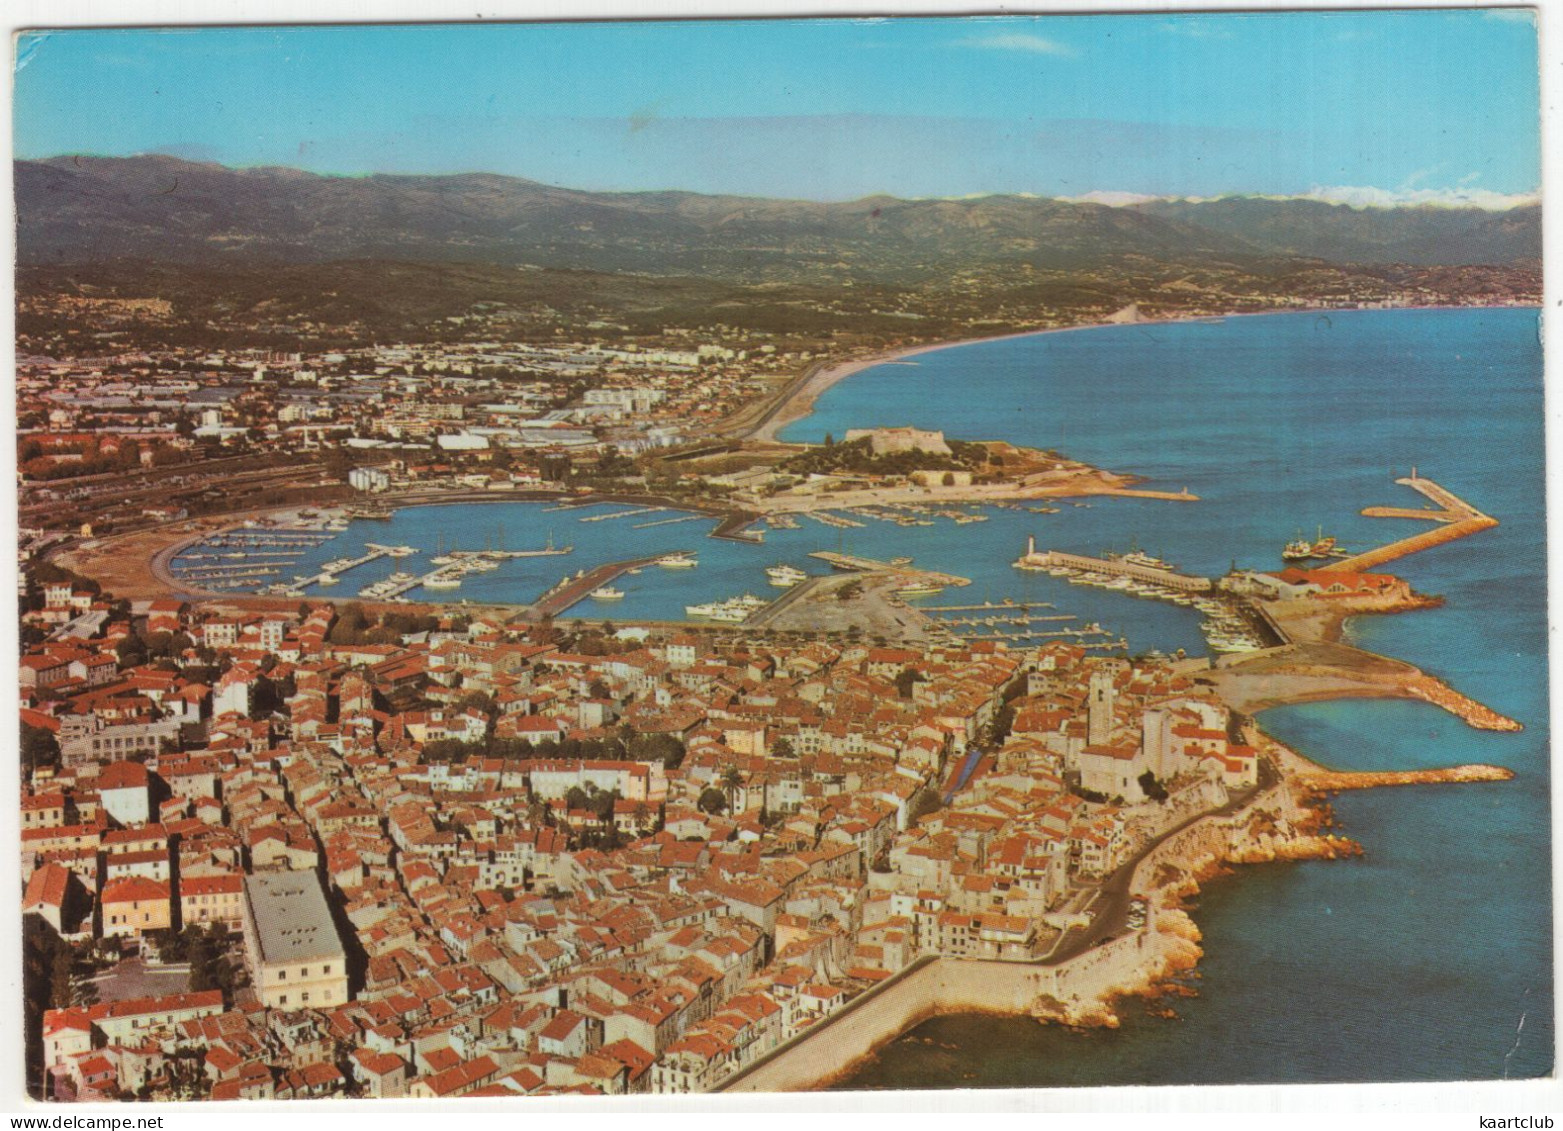 Antibes - Le Port Vauban - (France) - 1976 - Antibes - Old Town